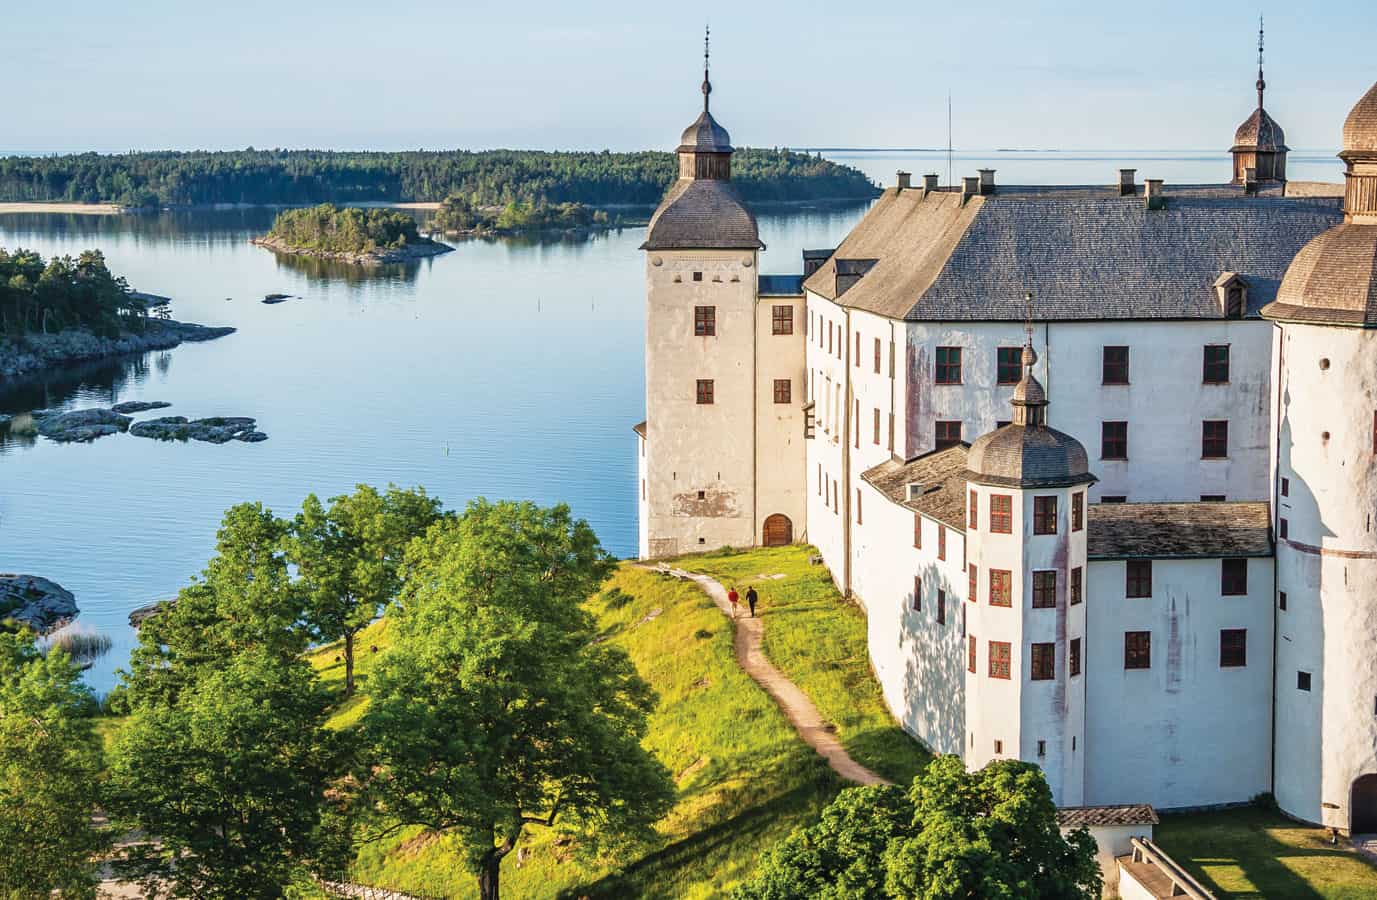 rent an island, Sweden